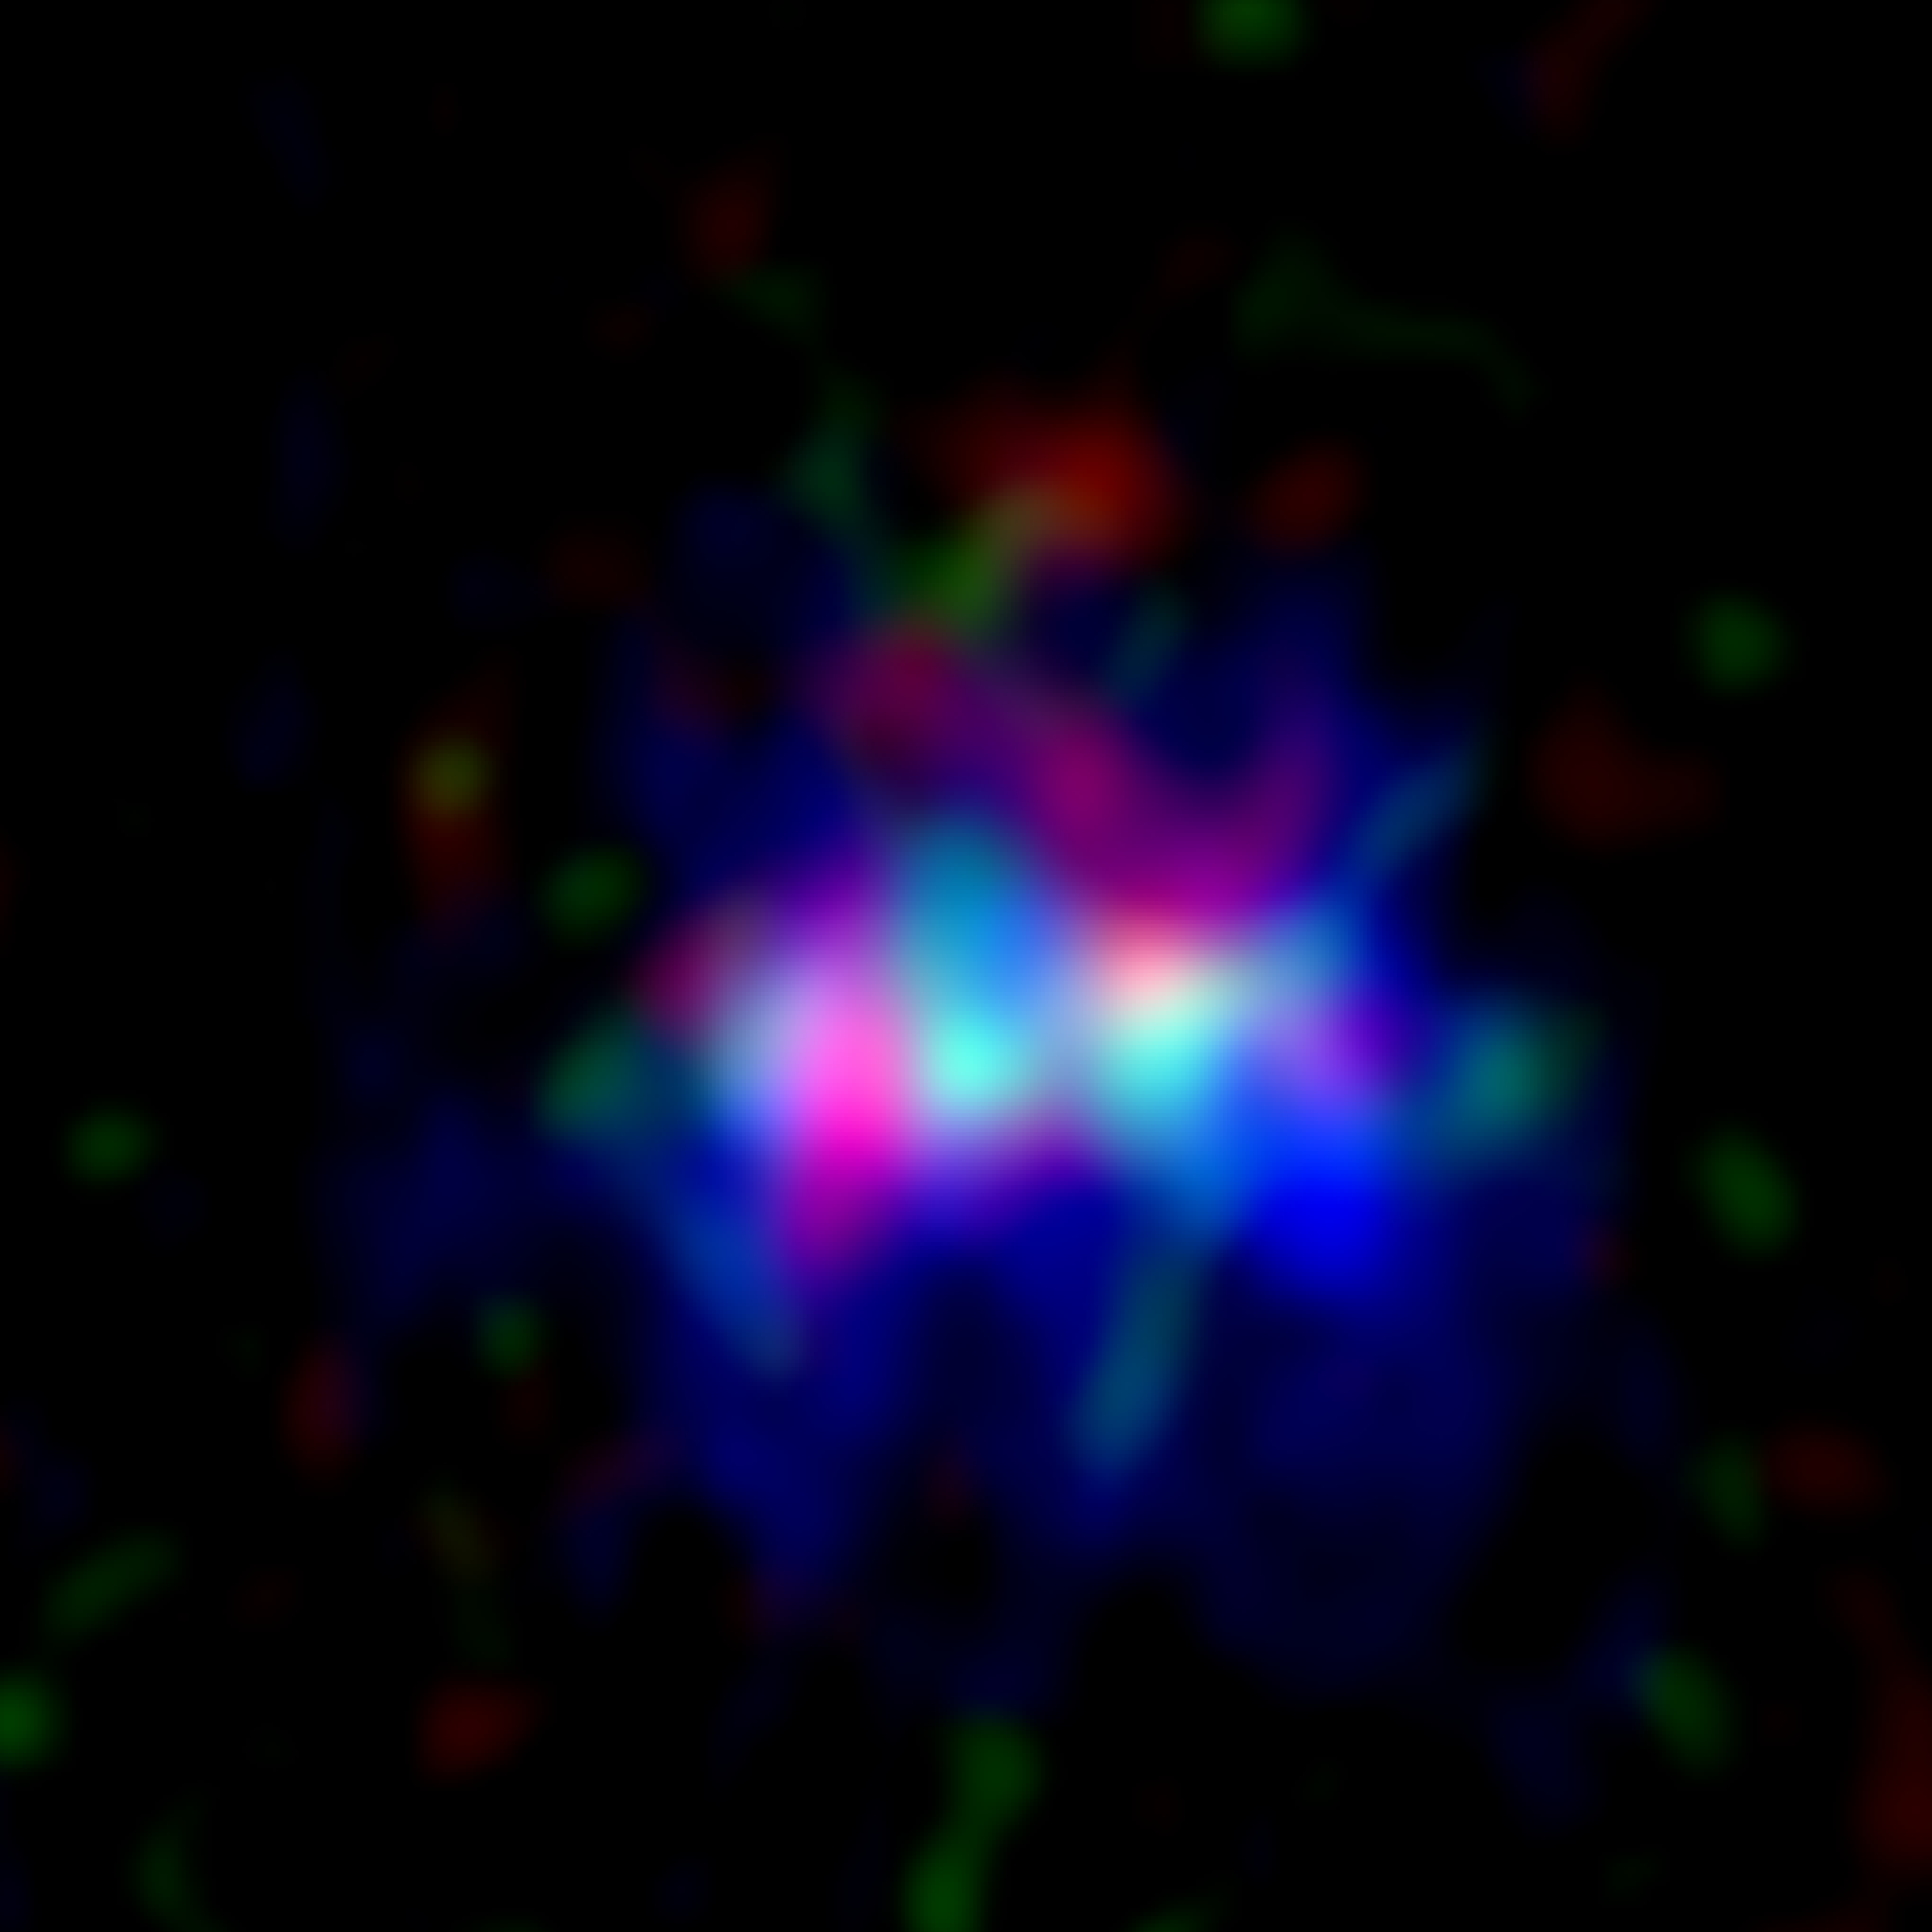 Imagen obtenida con ALMA de la galaxia MACS0416_Y1, ubicada a 13.200 millones de años luz, donde se encuentra la nebulosa oscura más lejana detectada a la fecha. La imagen abarca cerca de 15.000 años luz hacia cada lado. Imágenes de radio obtenidas por ALMA donde se aprecia la nebulosa oscura (emitiendo ondas de radio del polvo, mostradas en rojo) y la nebulosa de emisión (emitiendo ondas de radio de oxígeno, en verde), junto con imágenes de estrellas capturadas por el Telescopio Espacial Hubble (en azul). Créditos: ALMA (ESO/NAOJ/NRAO), Y. Tamura et al., Telescopio Espacial Hubble de la NASA/ESA. Créditos: ALMA (ESO/NAOJ/NRAO), Y. Tamura et al.